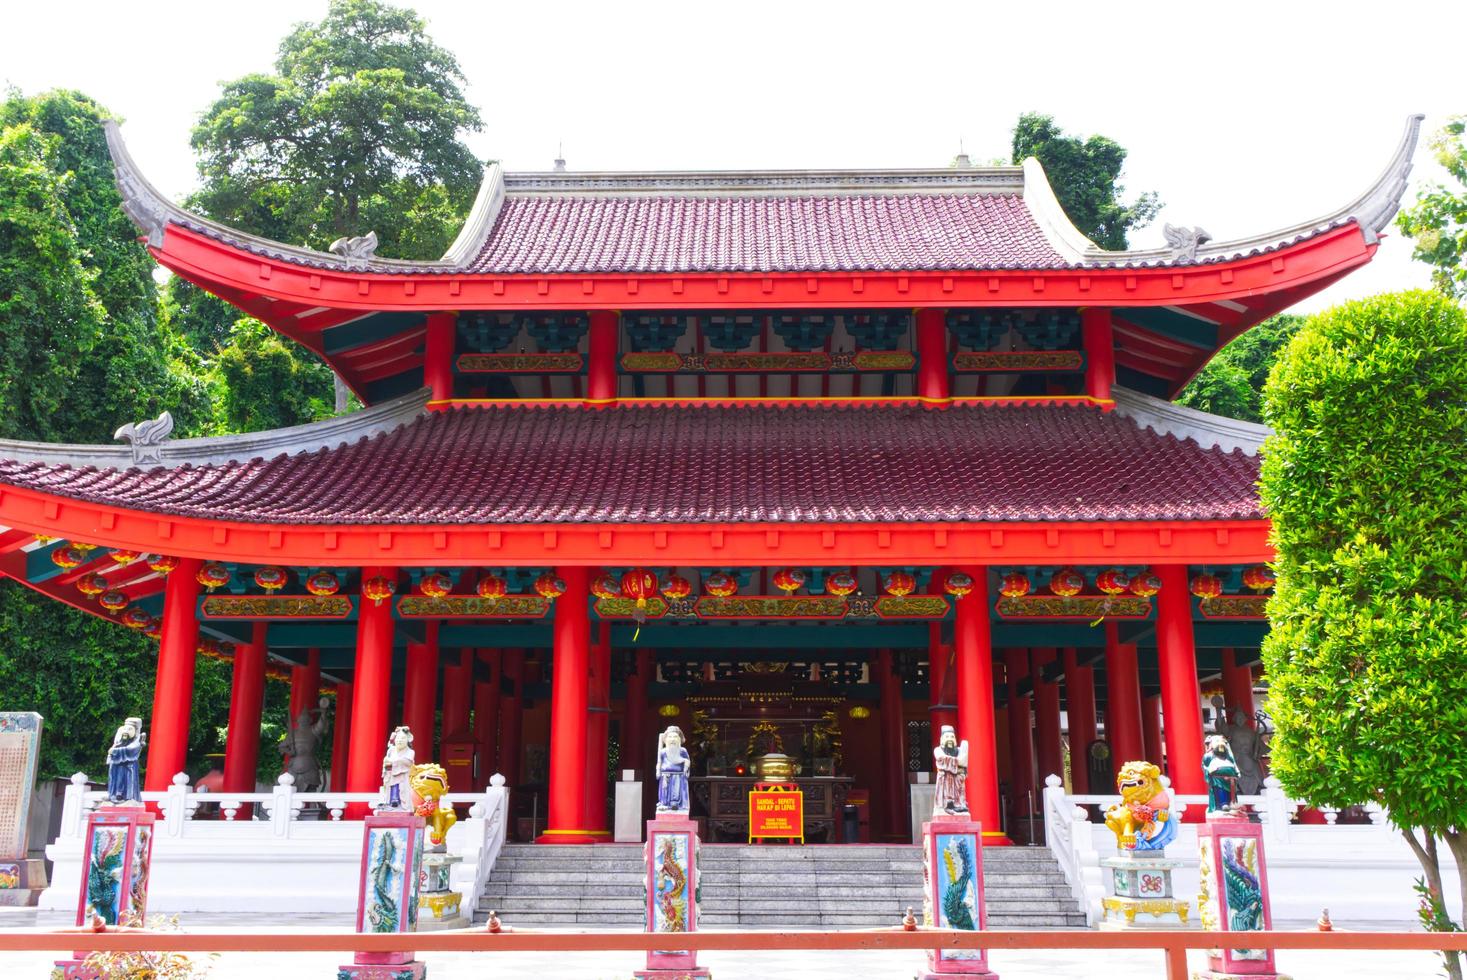 semarang indonésie 21 janvier 2021 sampokong également connu sous le nom de temple gedung batu est le plus ancien temple chinois semarang city central java indonésie usage éditorial uniquement photo